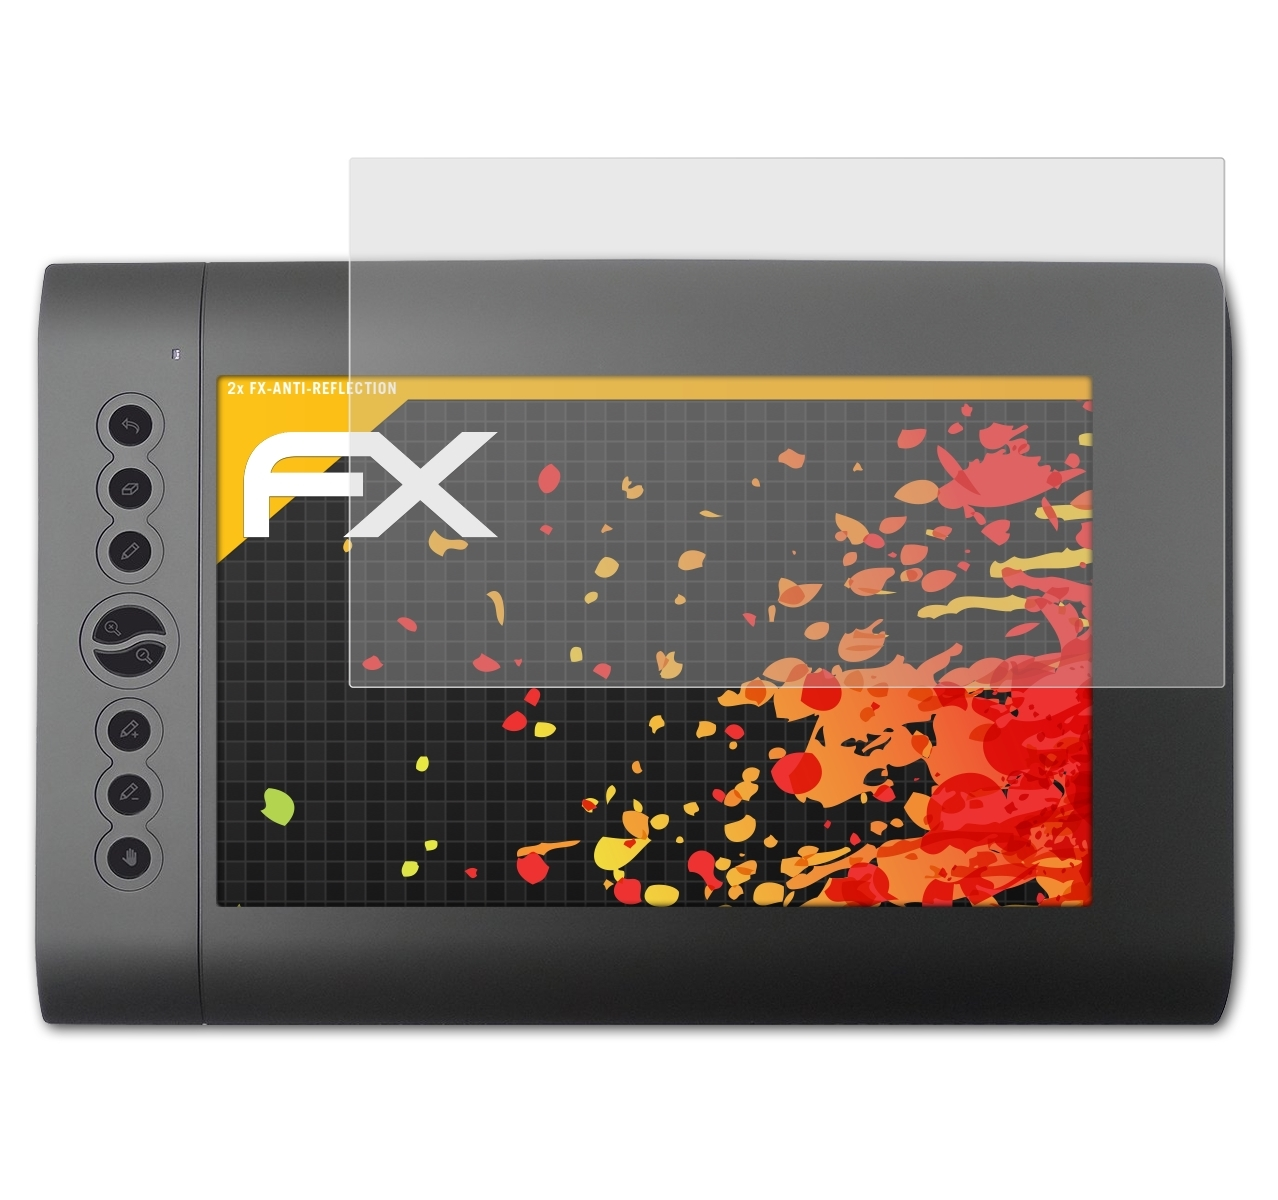 ATFOLIX 2x FX-Antireflex Displayschutz(für Huion H610Pro)